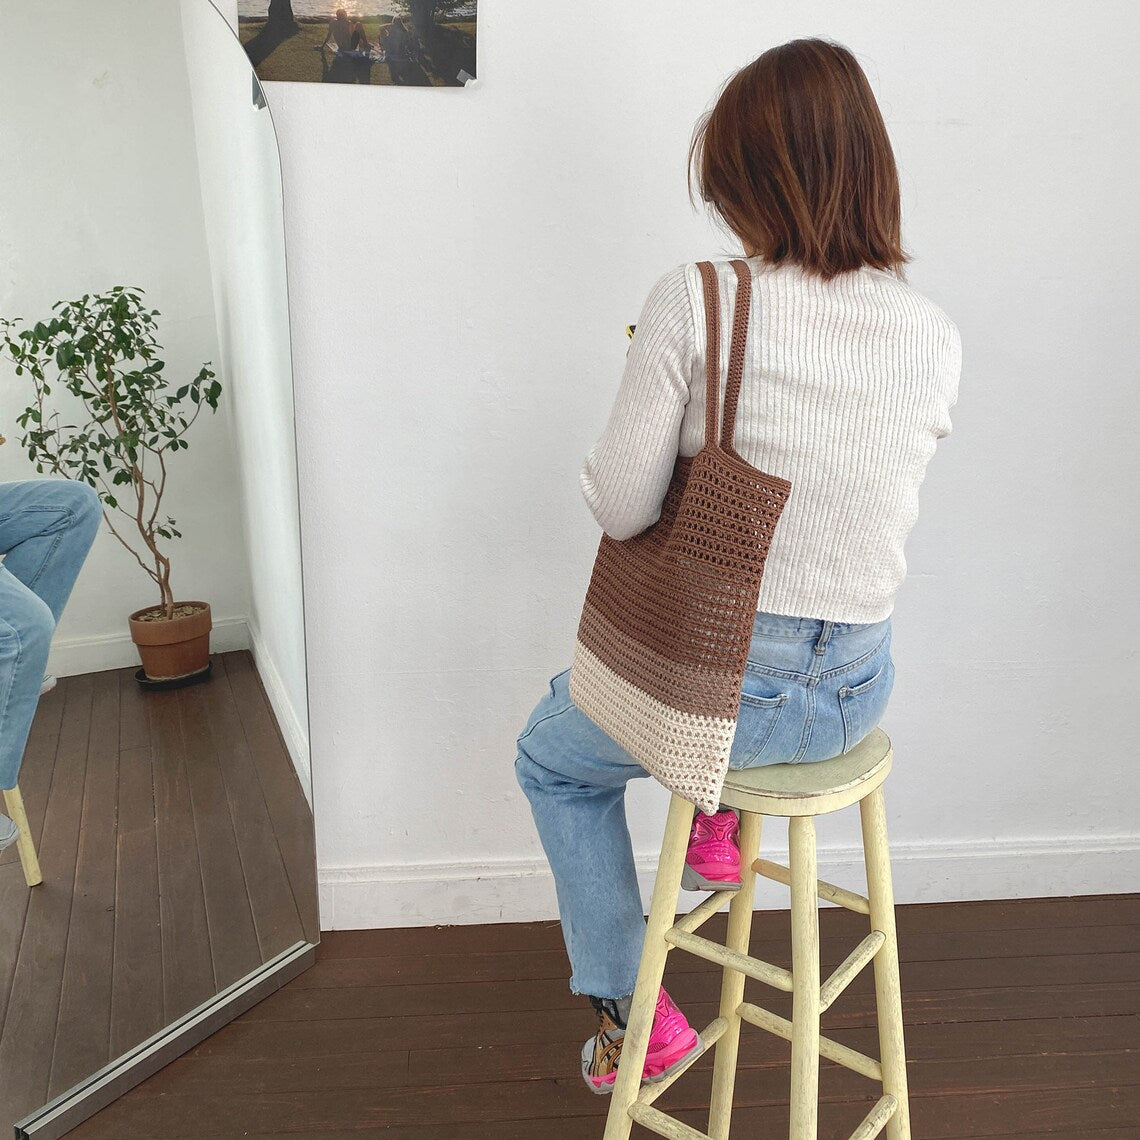 Woolen Hand-woven Bag Material DIY Crochet Cartoon Shoulder Bag Handbag  Gift For Girl Friend Kids Children - AliExpress